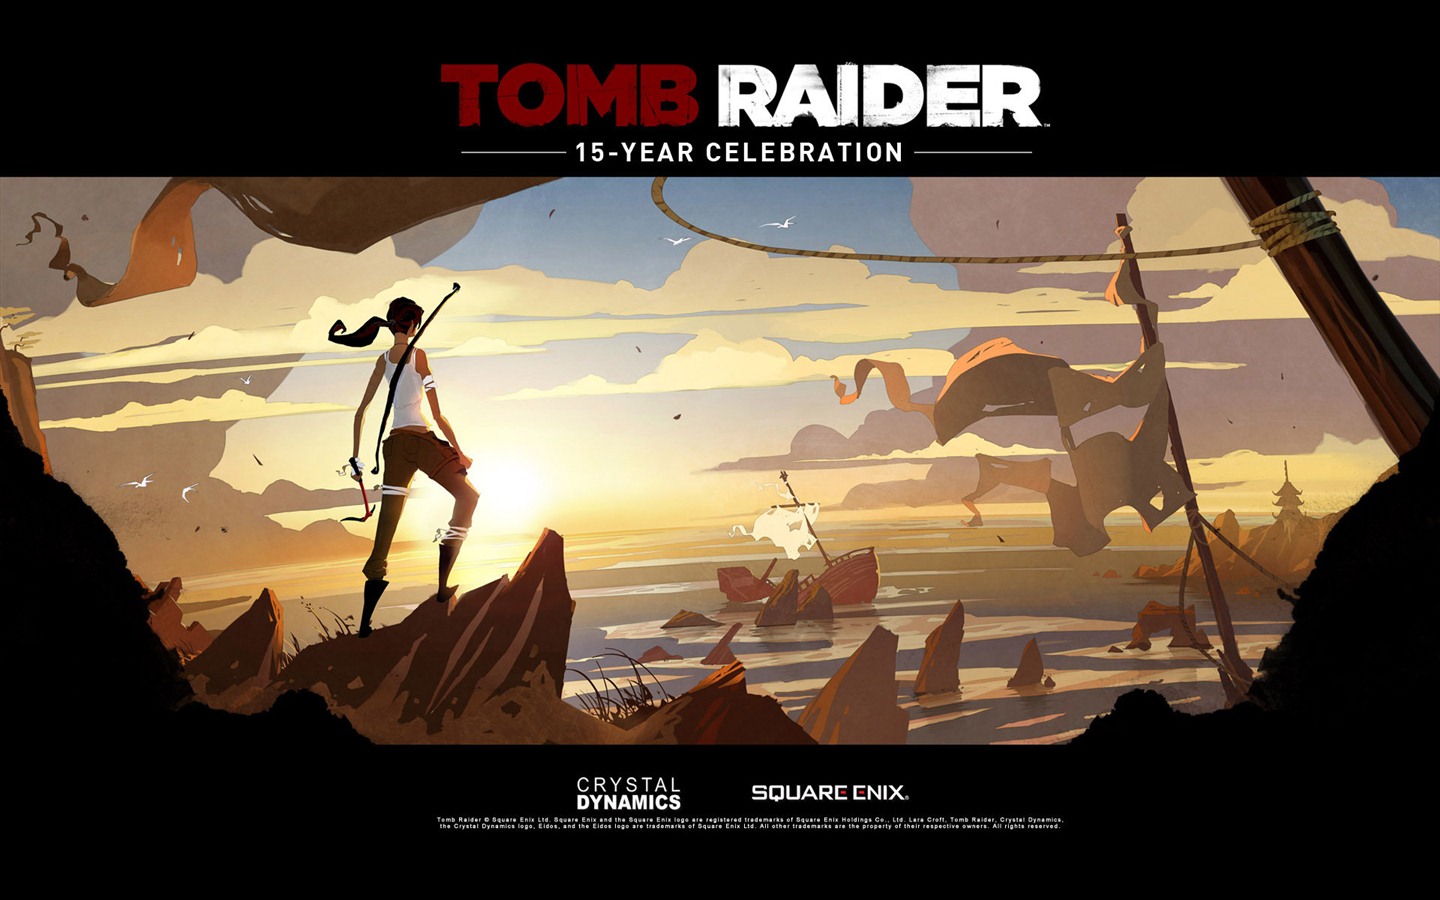 Tomb Raider 15-Year Celebration 古墓丽影15周年纪念版 高清壁纸13 - 1440x900